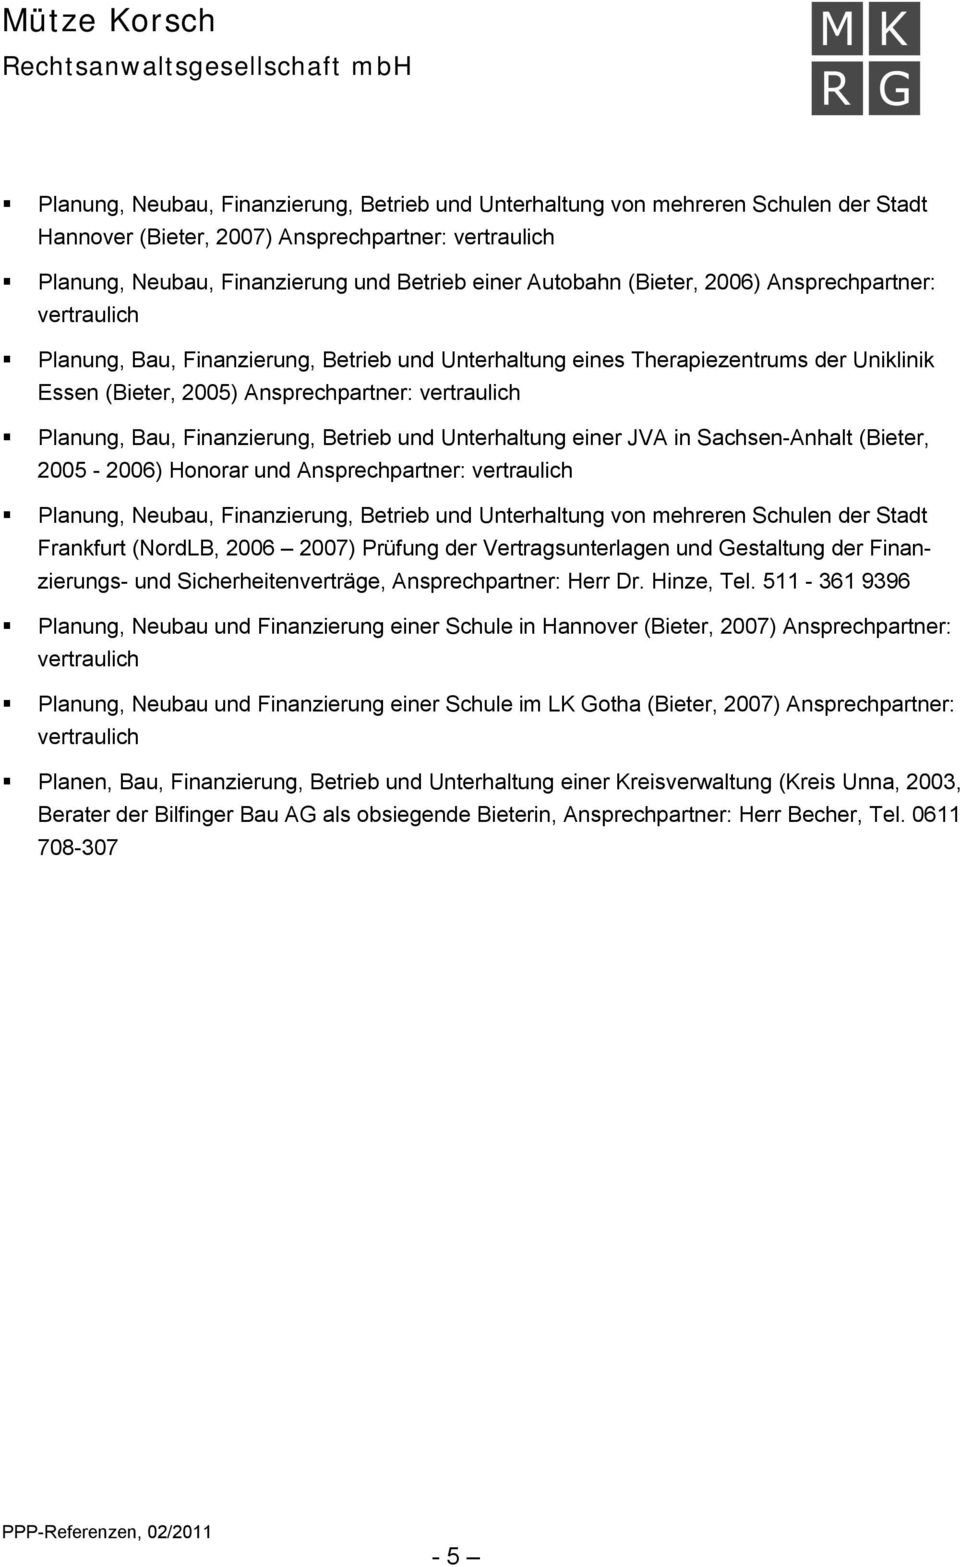 Finanzierung, Betrieb und Unterhaltung einer JVA in Sachsen-Anhalt (Bieter, 2005-2006) Honorar und Ansprechpartner: vertraulich Planung, Neubau, Finanzierung, Betrieb und Unterhaltung von mehreren